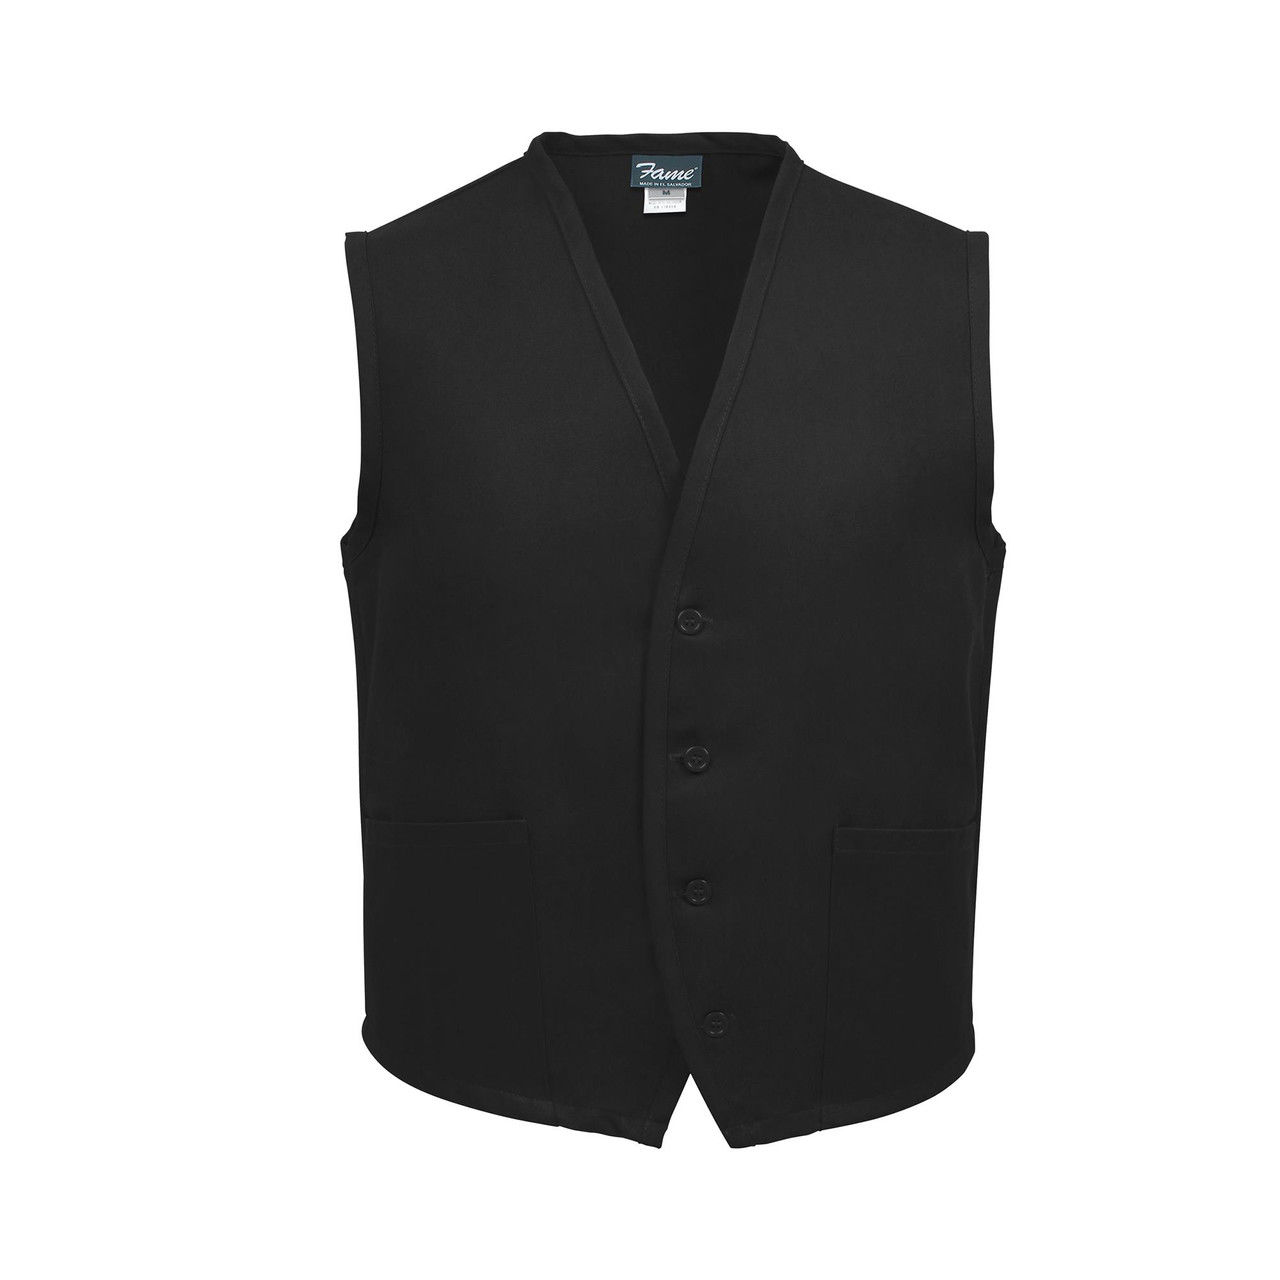 Unisex Uniform Vest, 2 Pocket, Black Questions & Answers